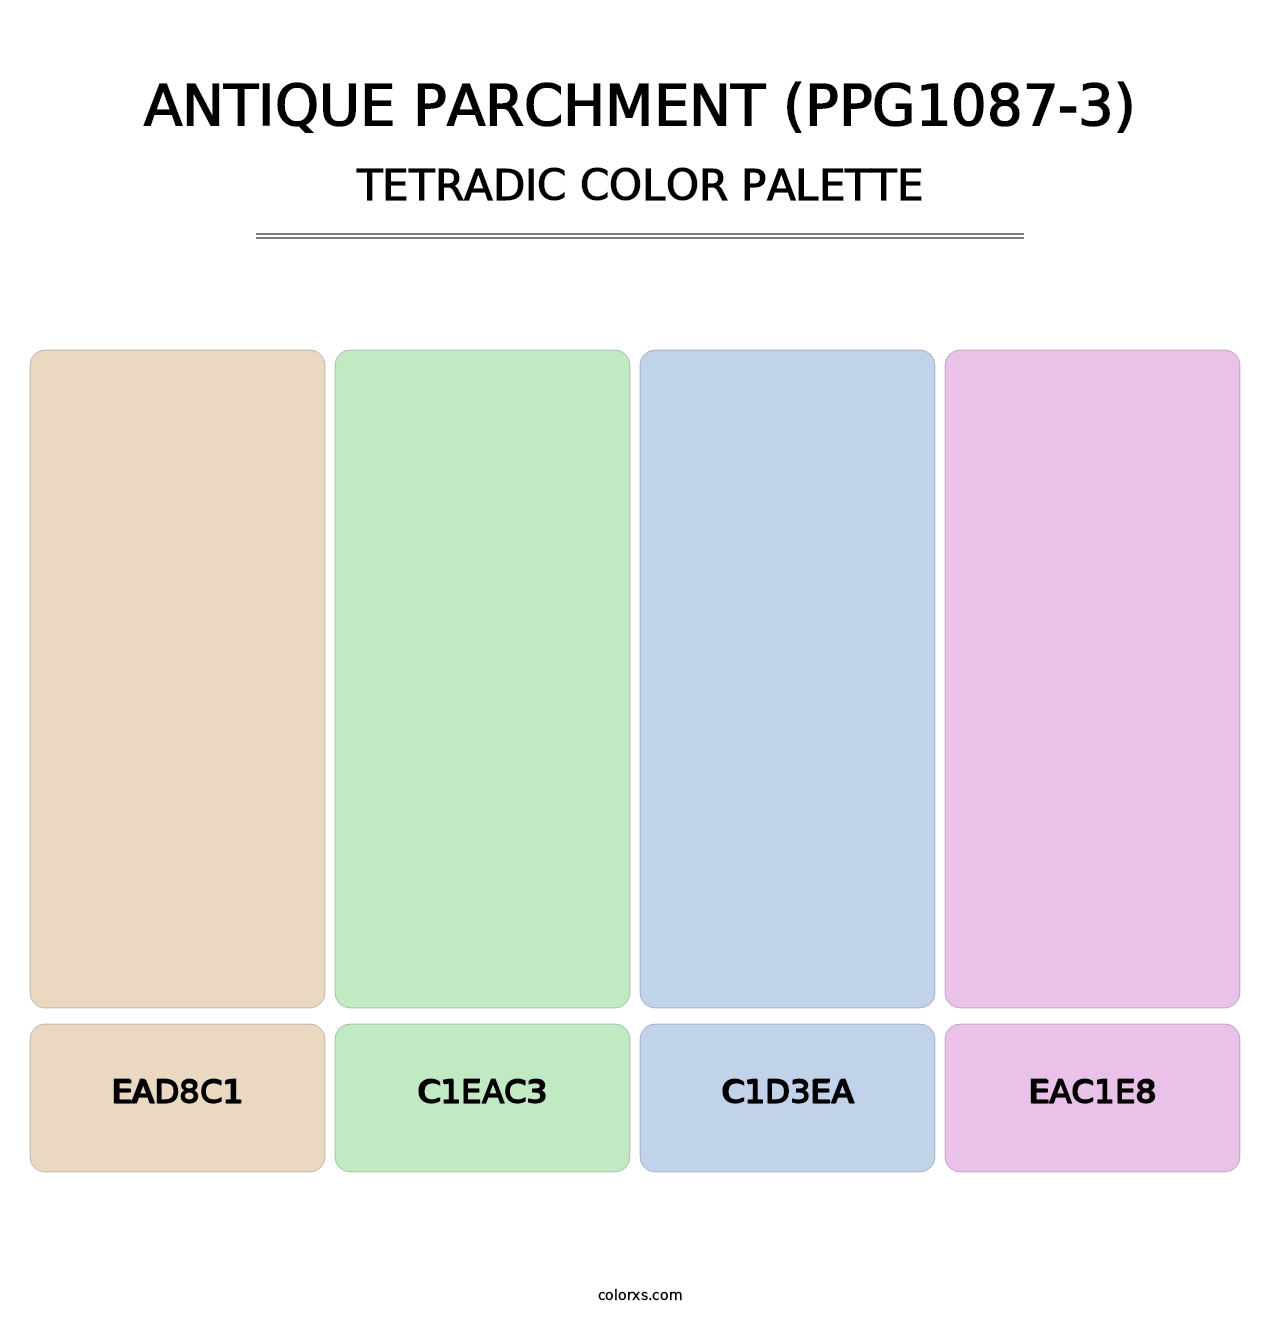 Antique Parchment (PPG1087-3) - Tetradic Color Palette